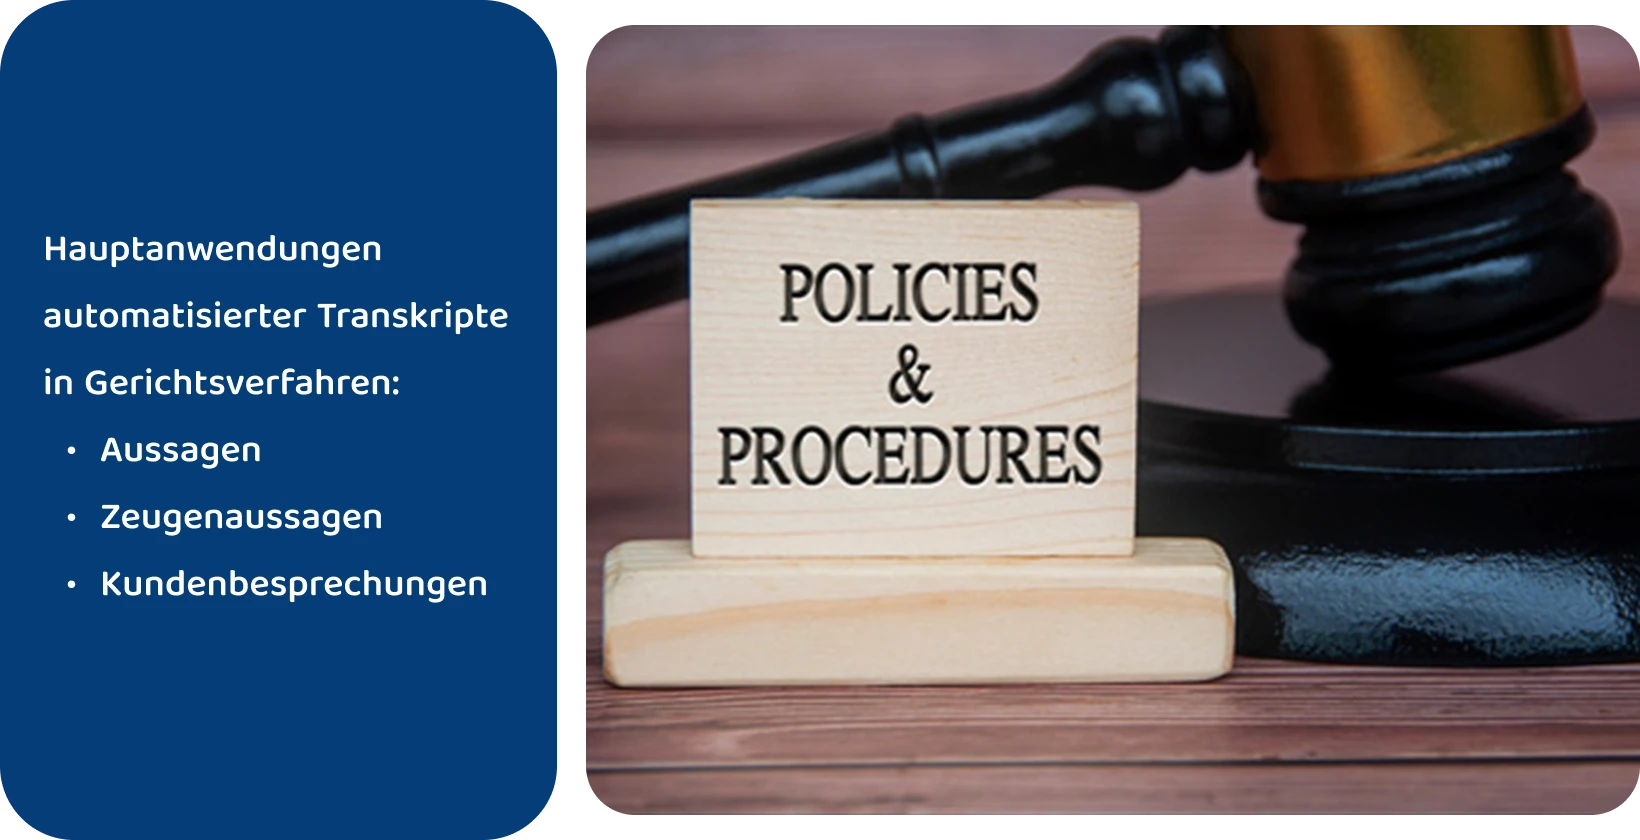 Hammer neben dem Schild "Policies & Procedures", das für rechtliche Standards steht, die von automatisierten Transkriptionstools erfüllt werden.